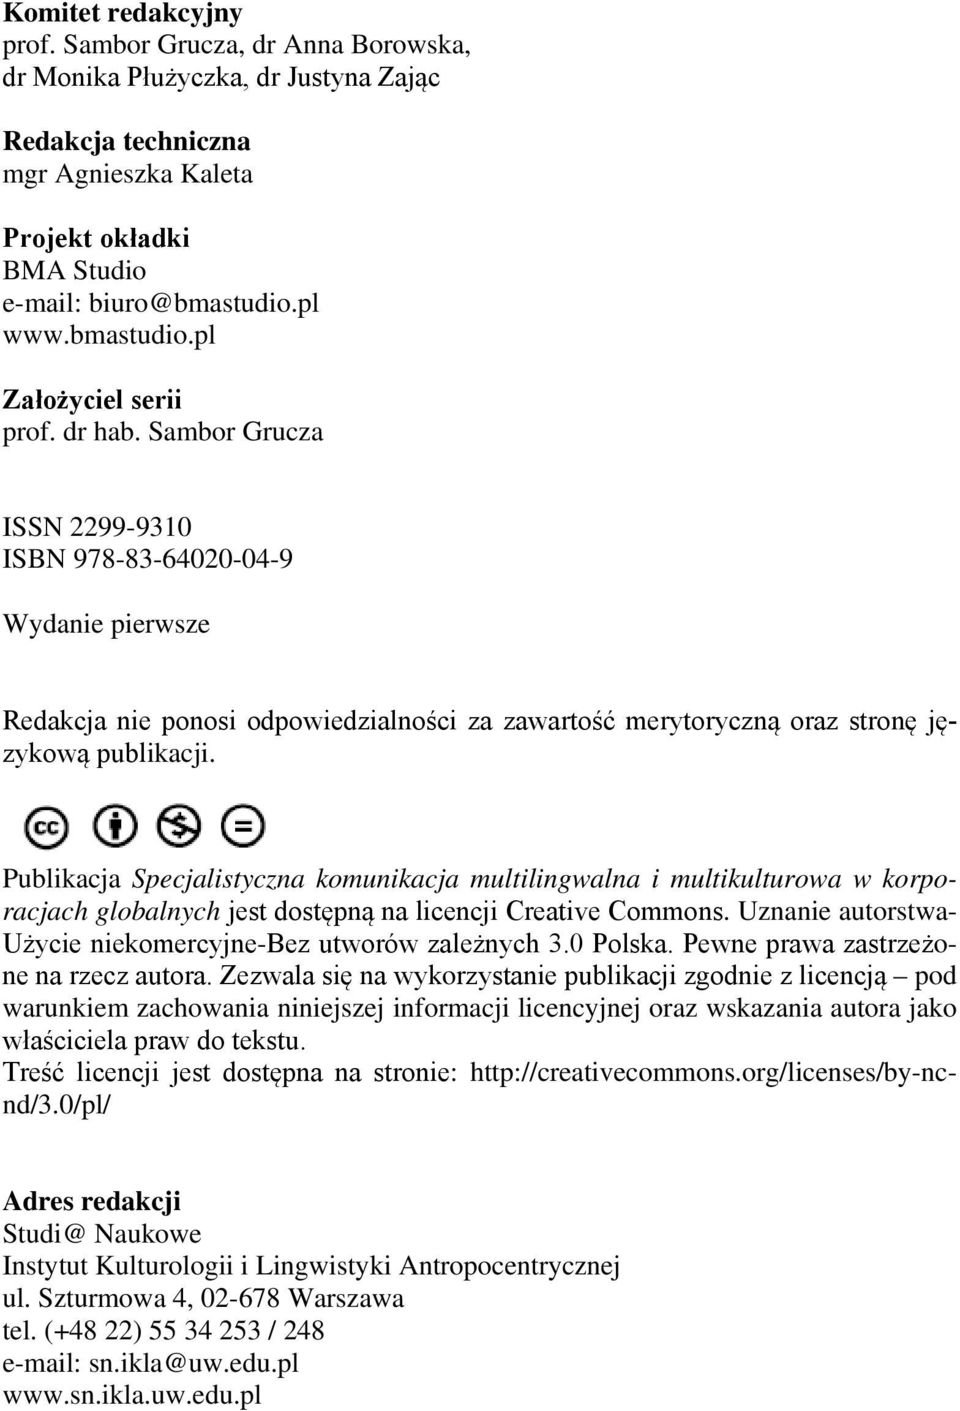 Sambor Grucza ISSN 2299-9310 ISBN 978-83-64020-04-9 Wydanie pierwsze Redakcja nie ponosi odpowiedzialności za zawartość merytoryczną oraz stronę językową publikacji.